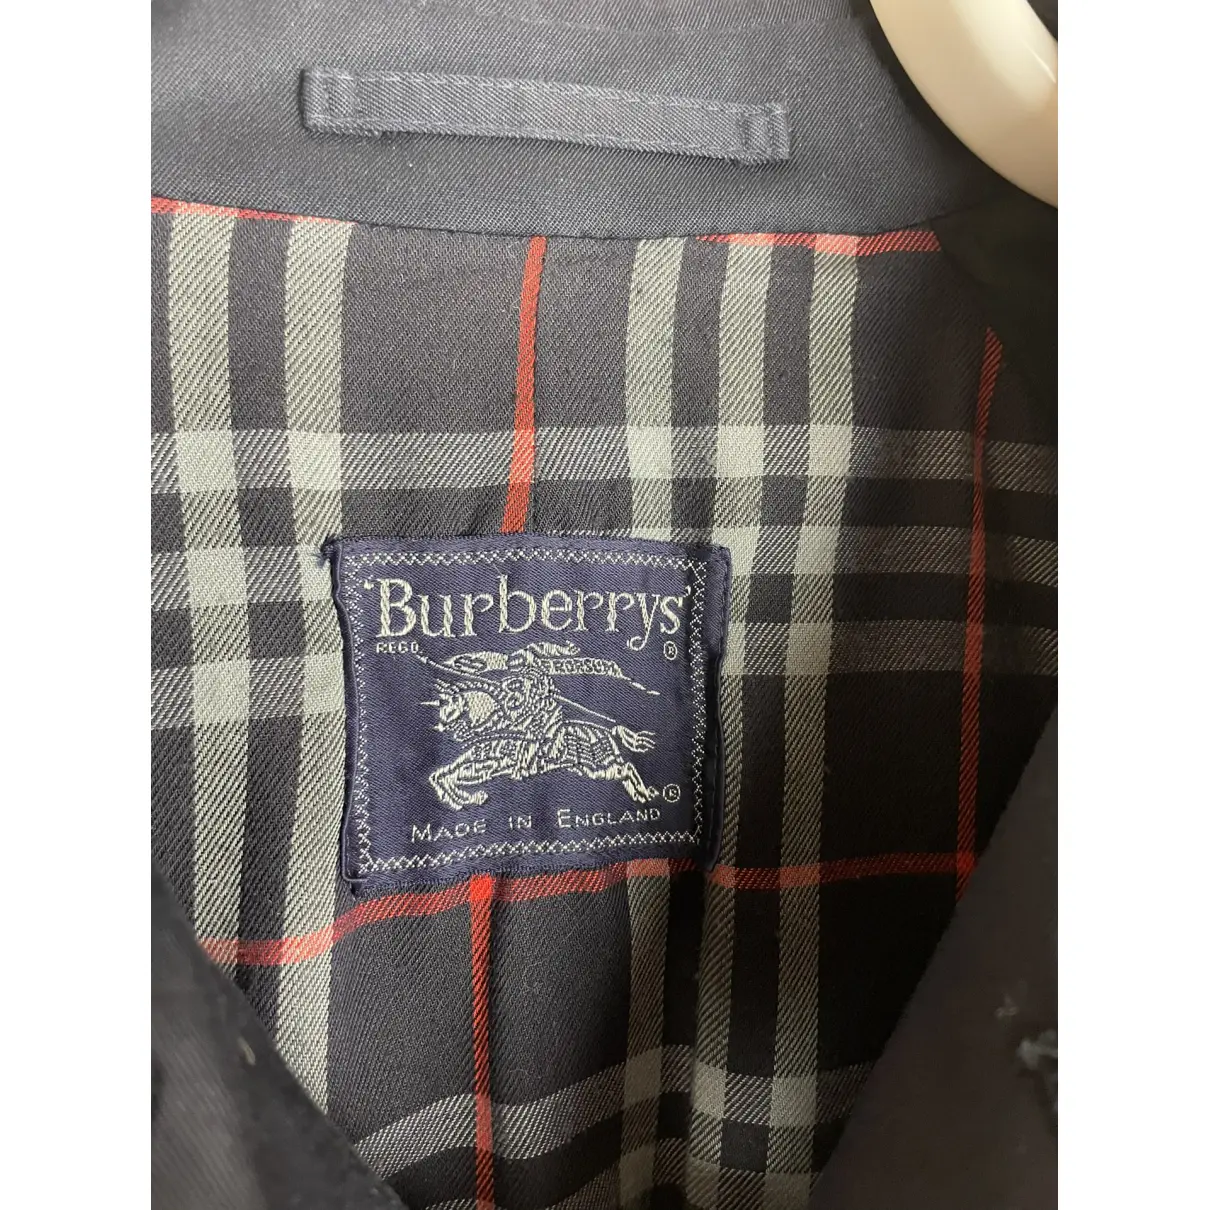 Buy Burberry Coat online - Vintage